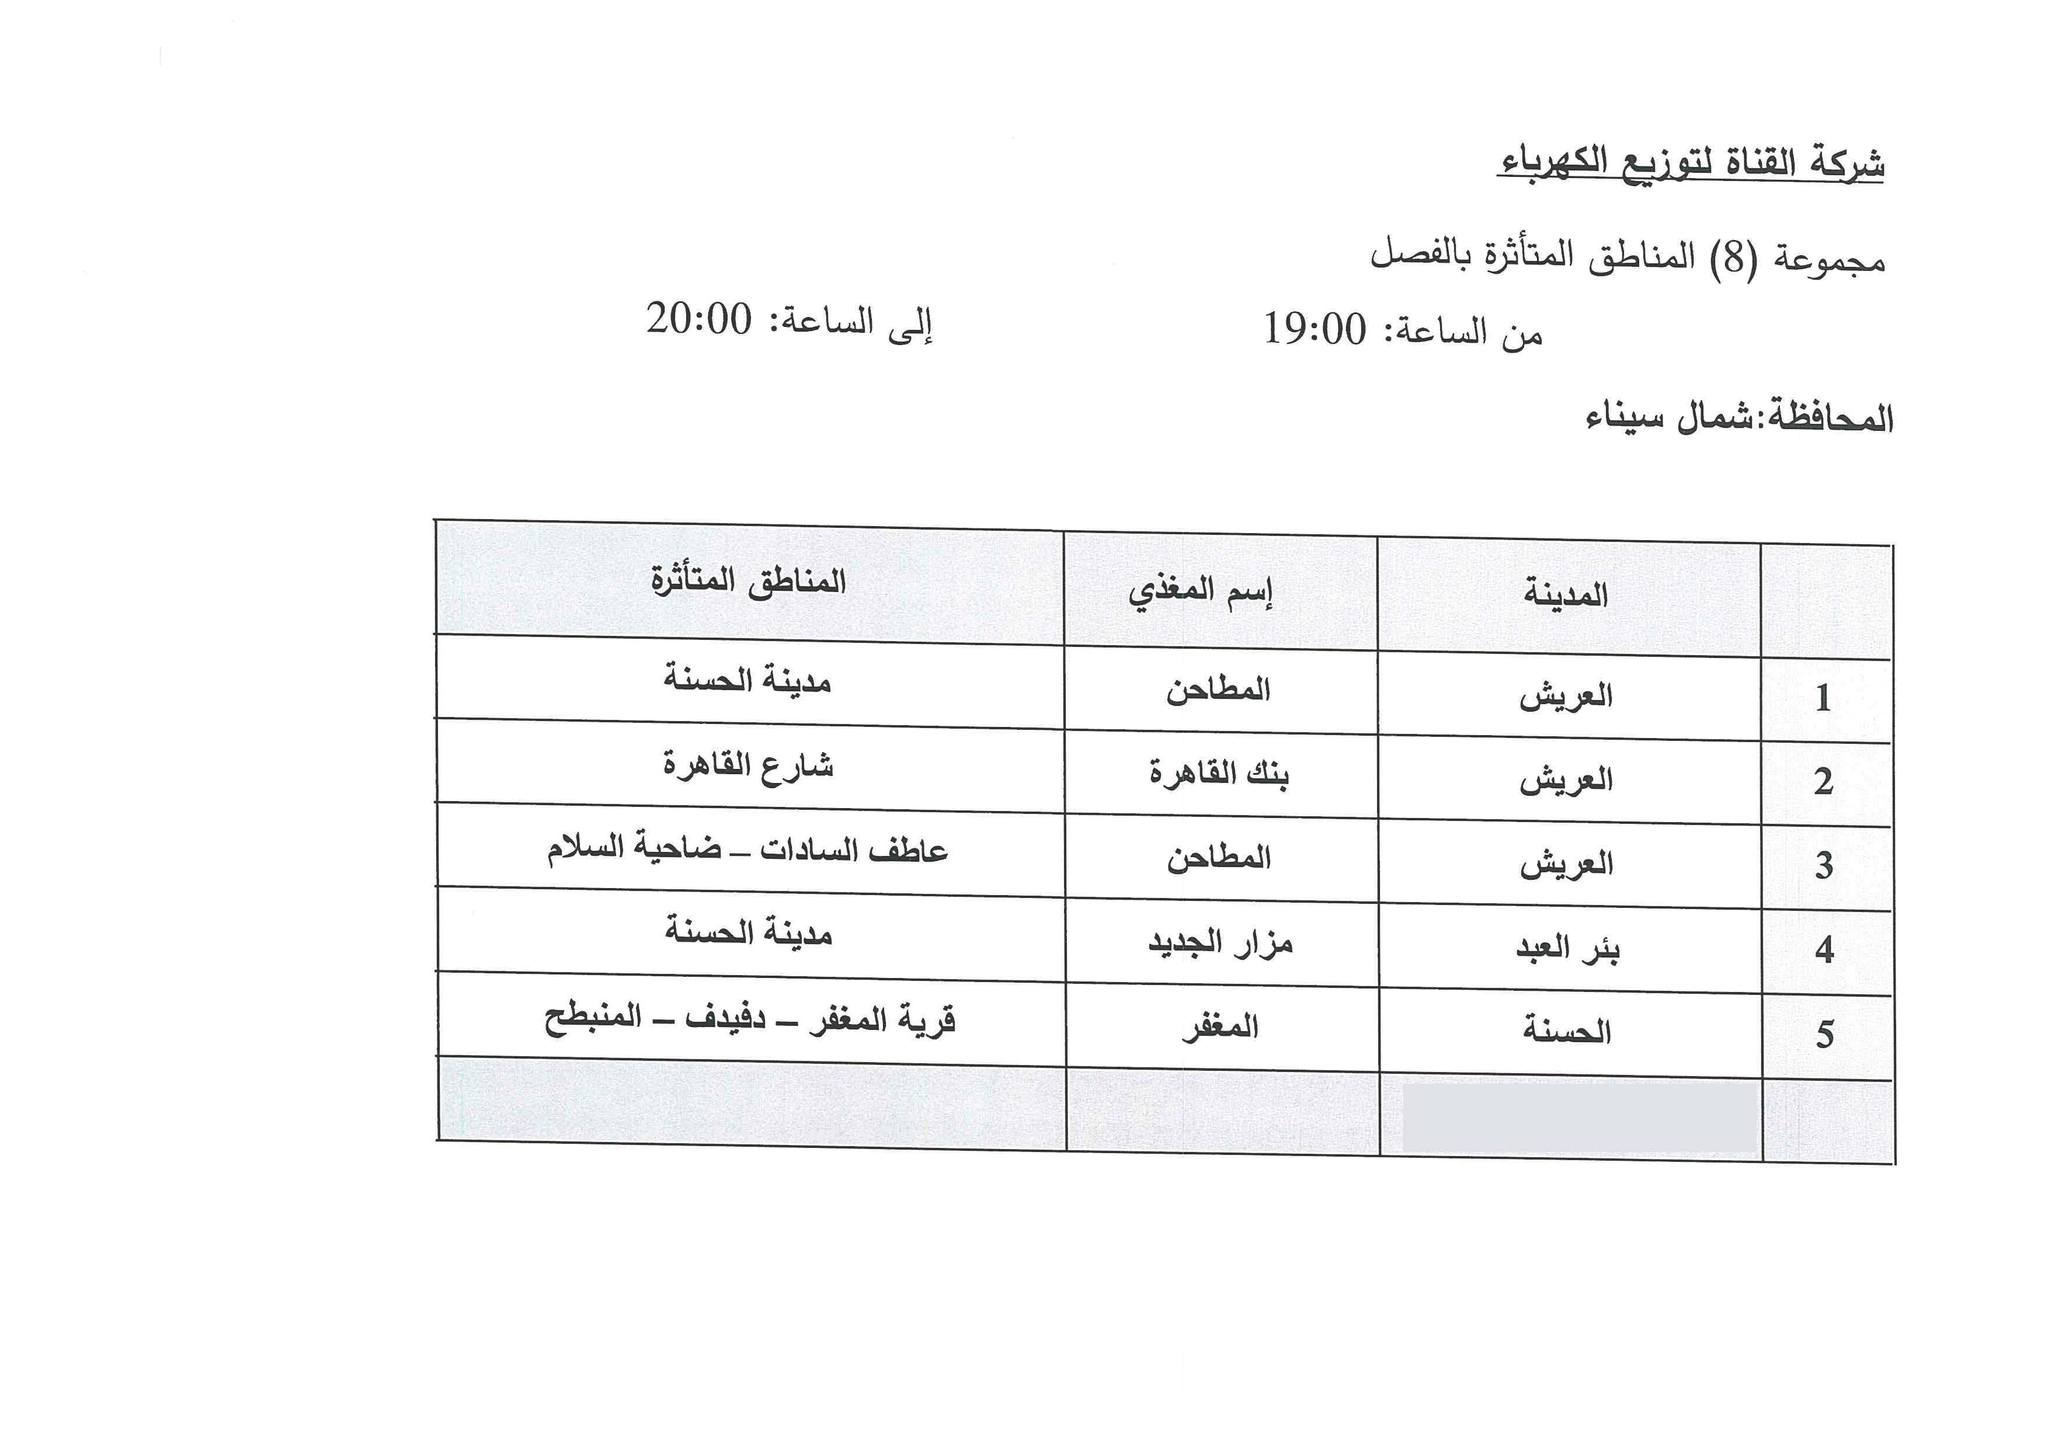 جدول مواعيد تخفيف الأحمال الكهربائية فى محافظة شمال سيناء (11)